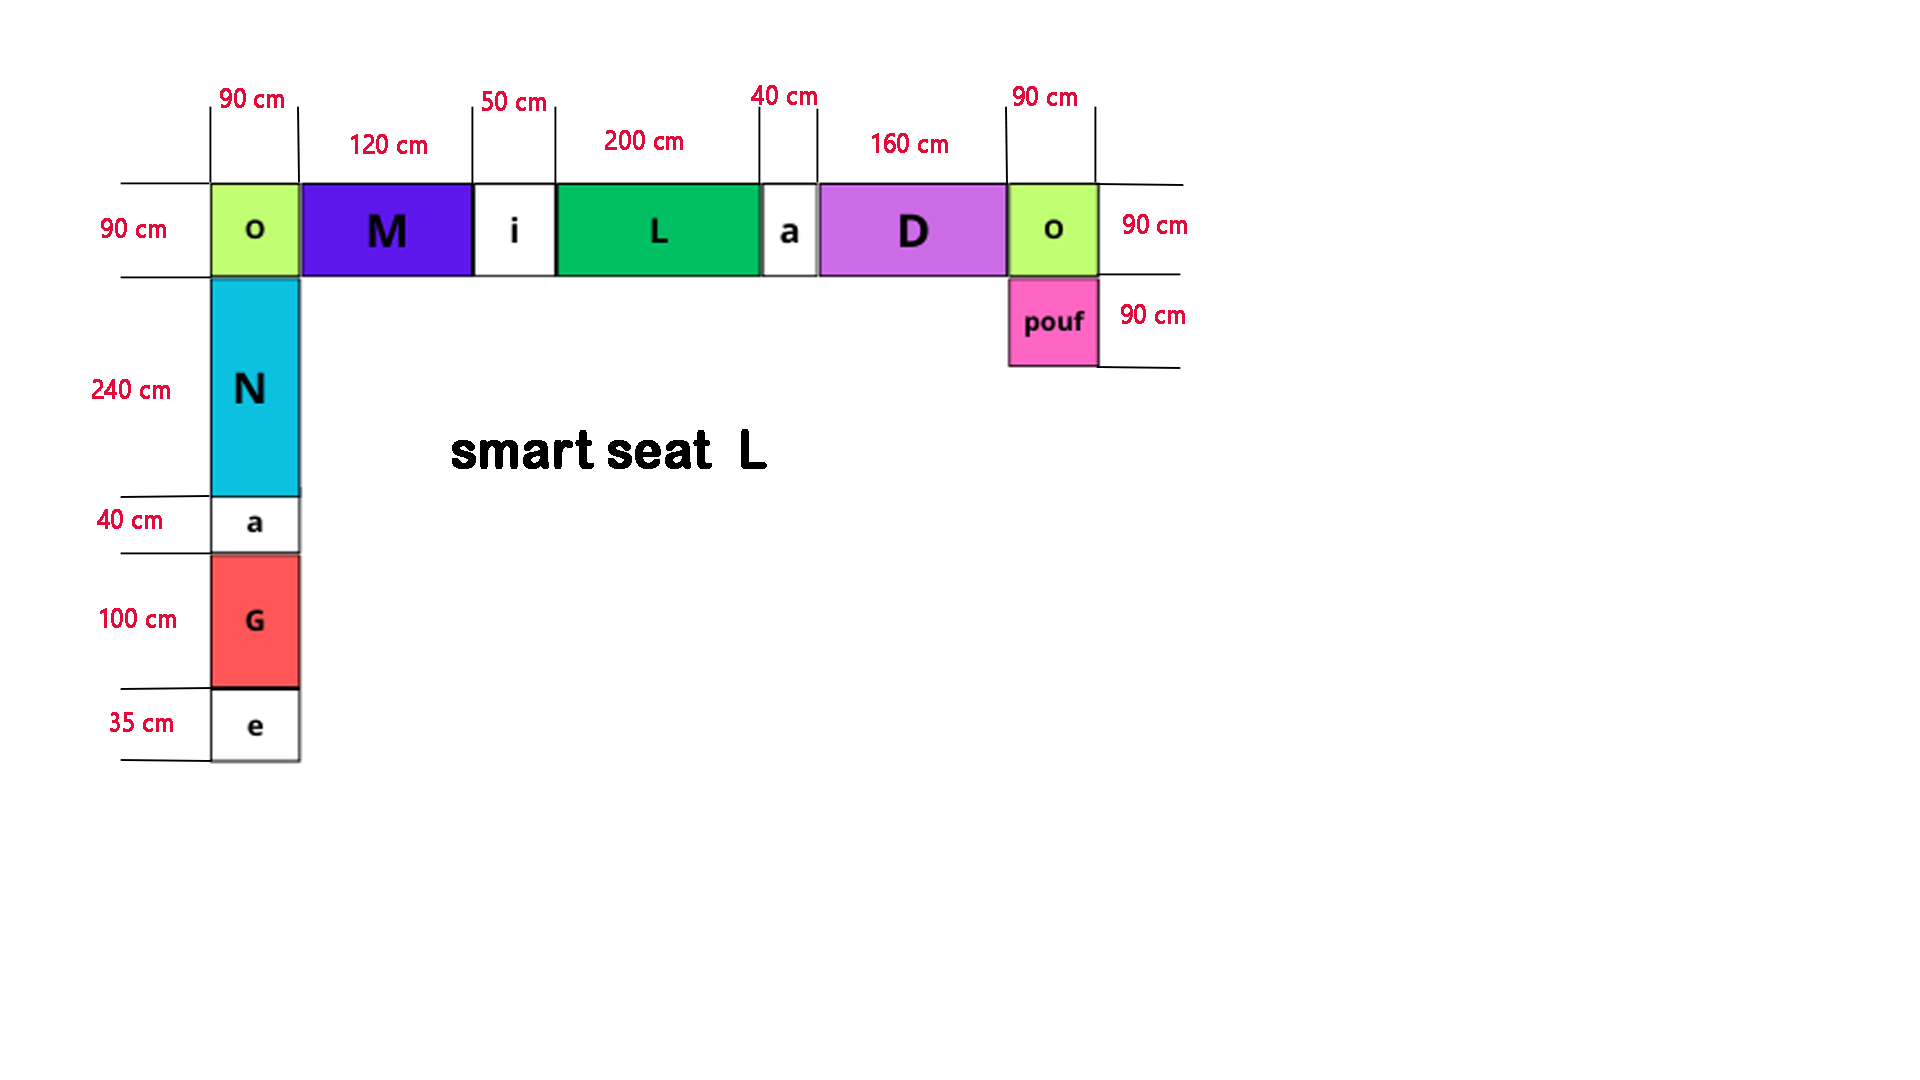 smart seat L